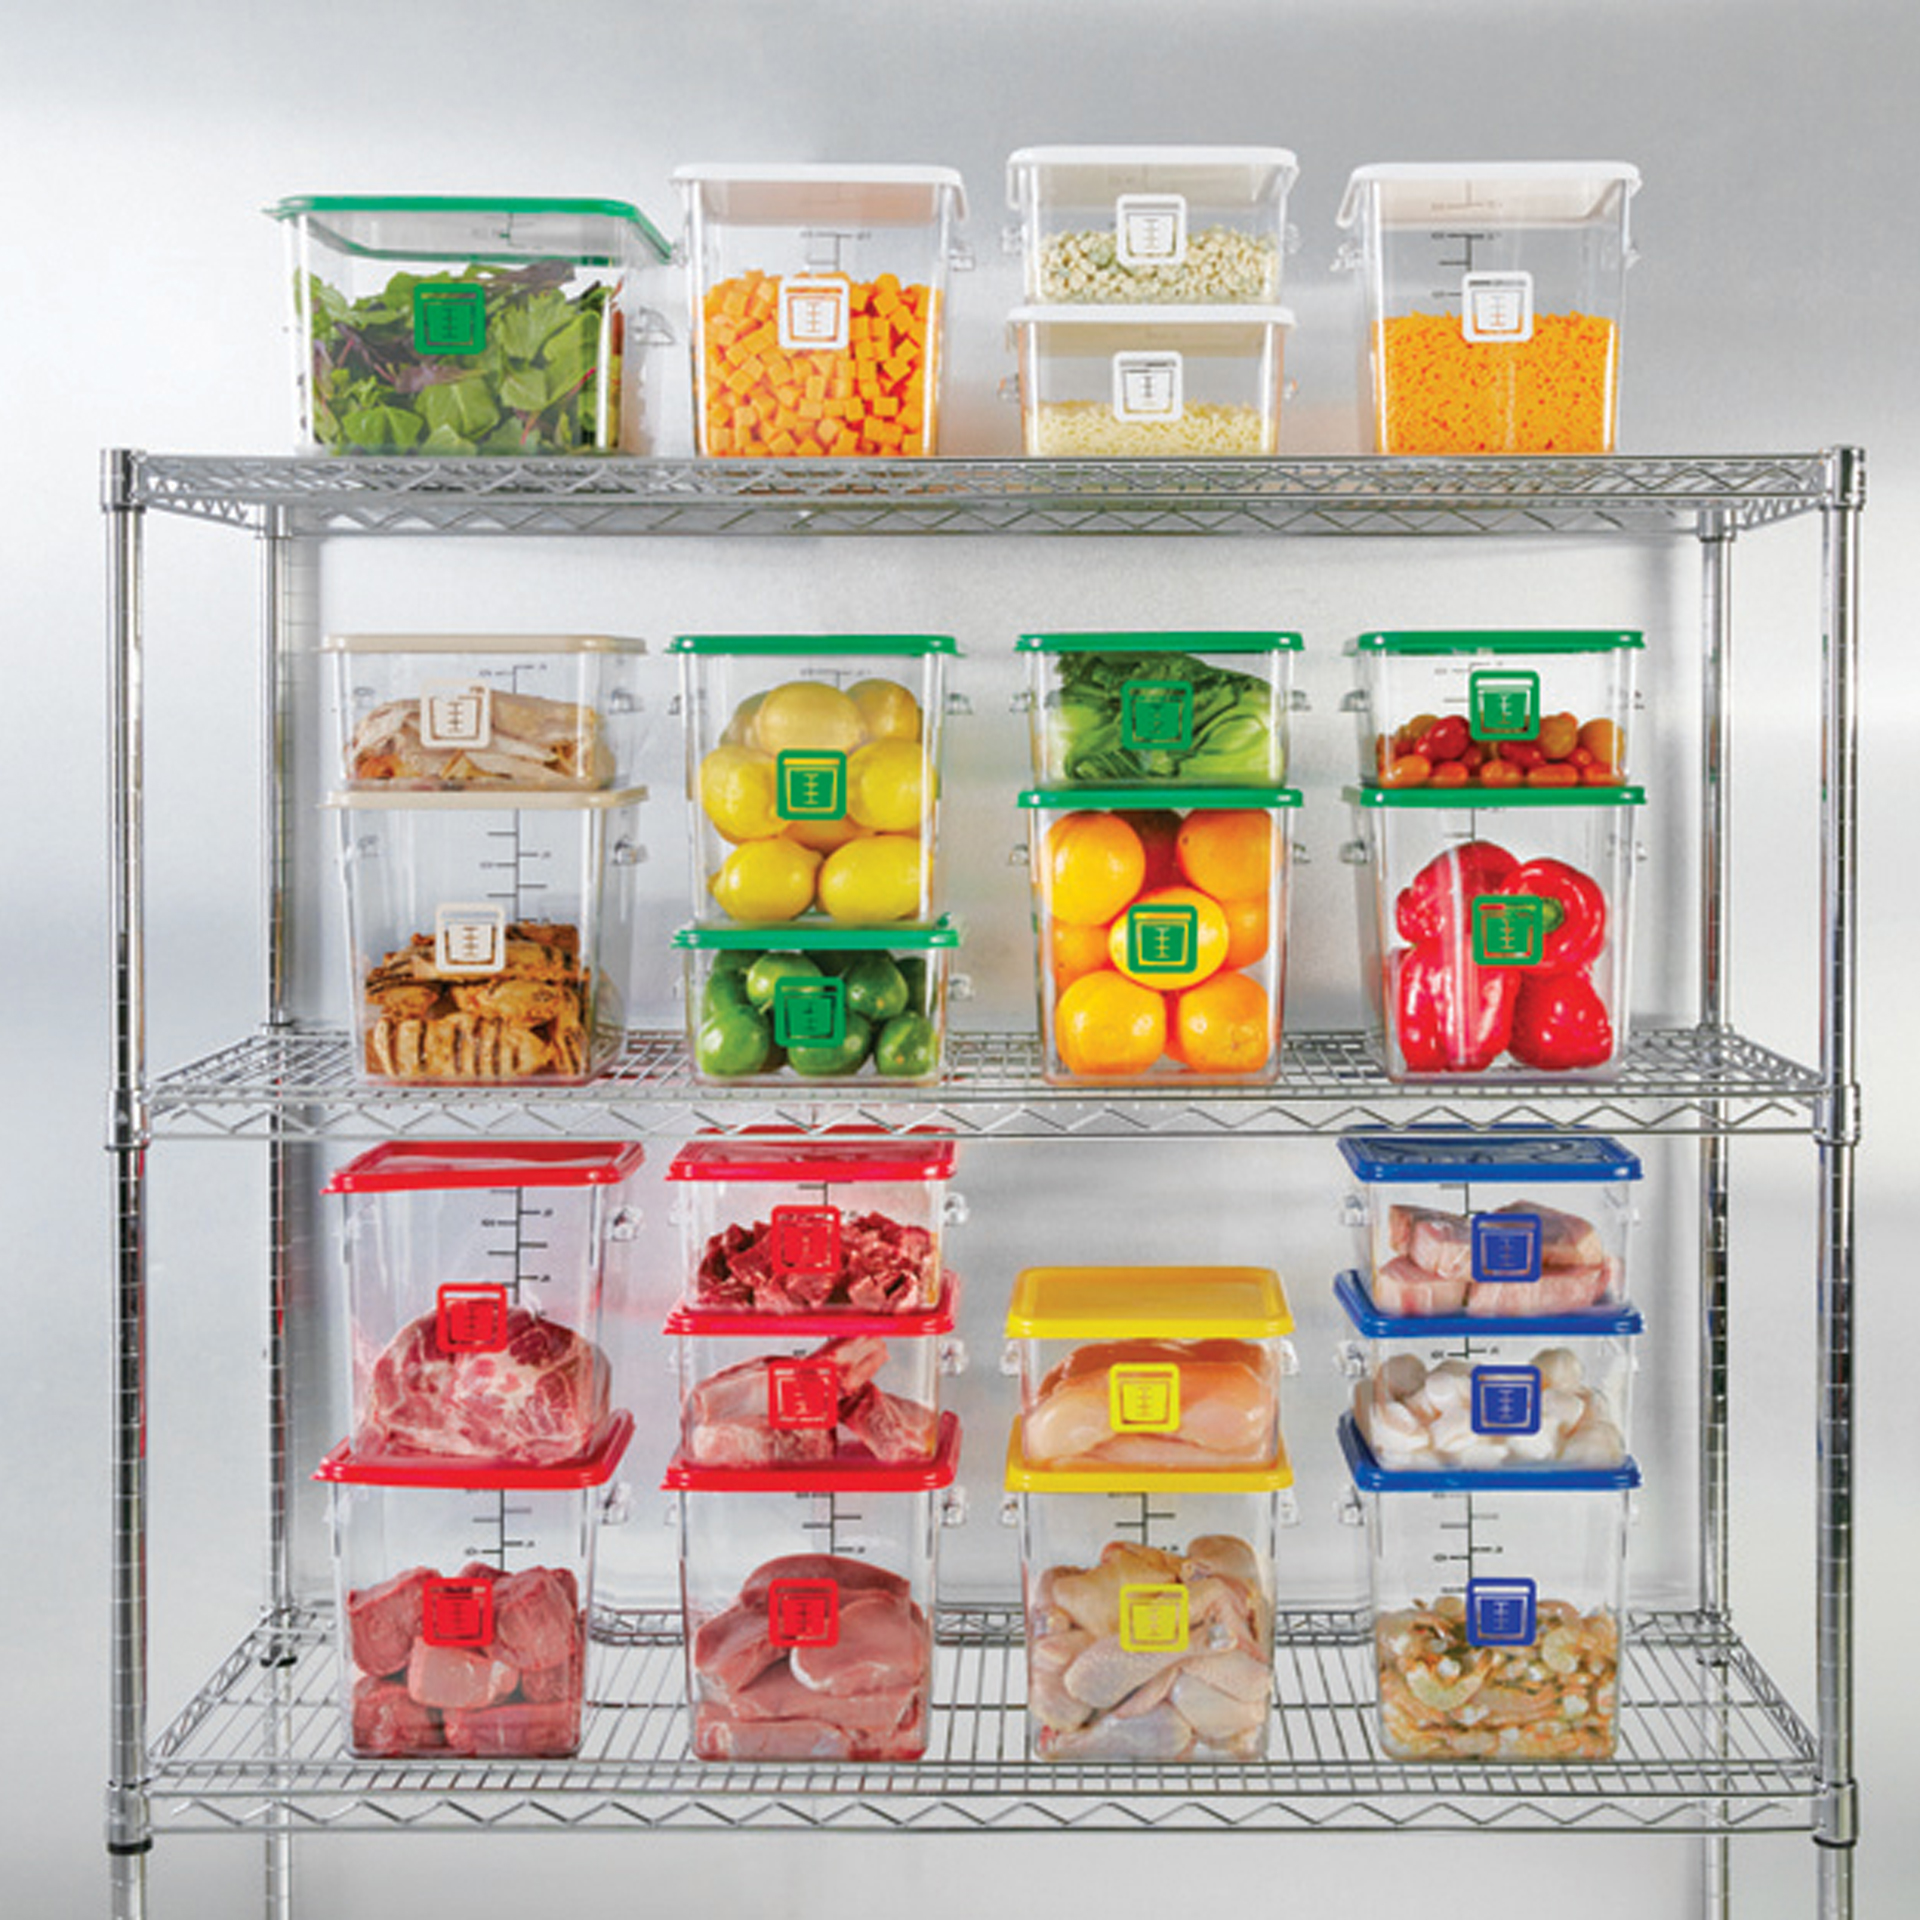 กล่องเก็บวัตถุดิบอาหารสี่เหลี่ยม Color-Coded Square Container Clear ขนาด 8 qt สีเหลือง